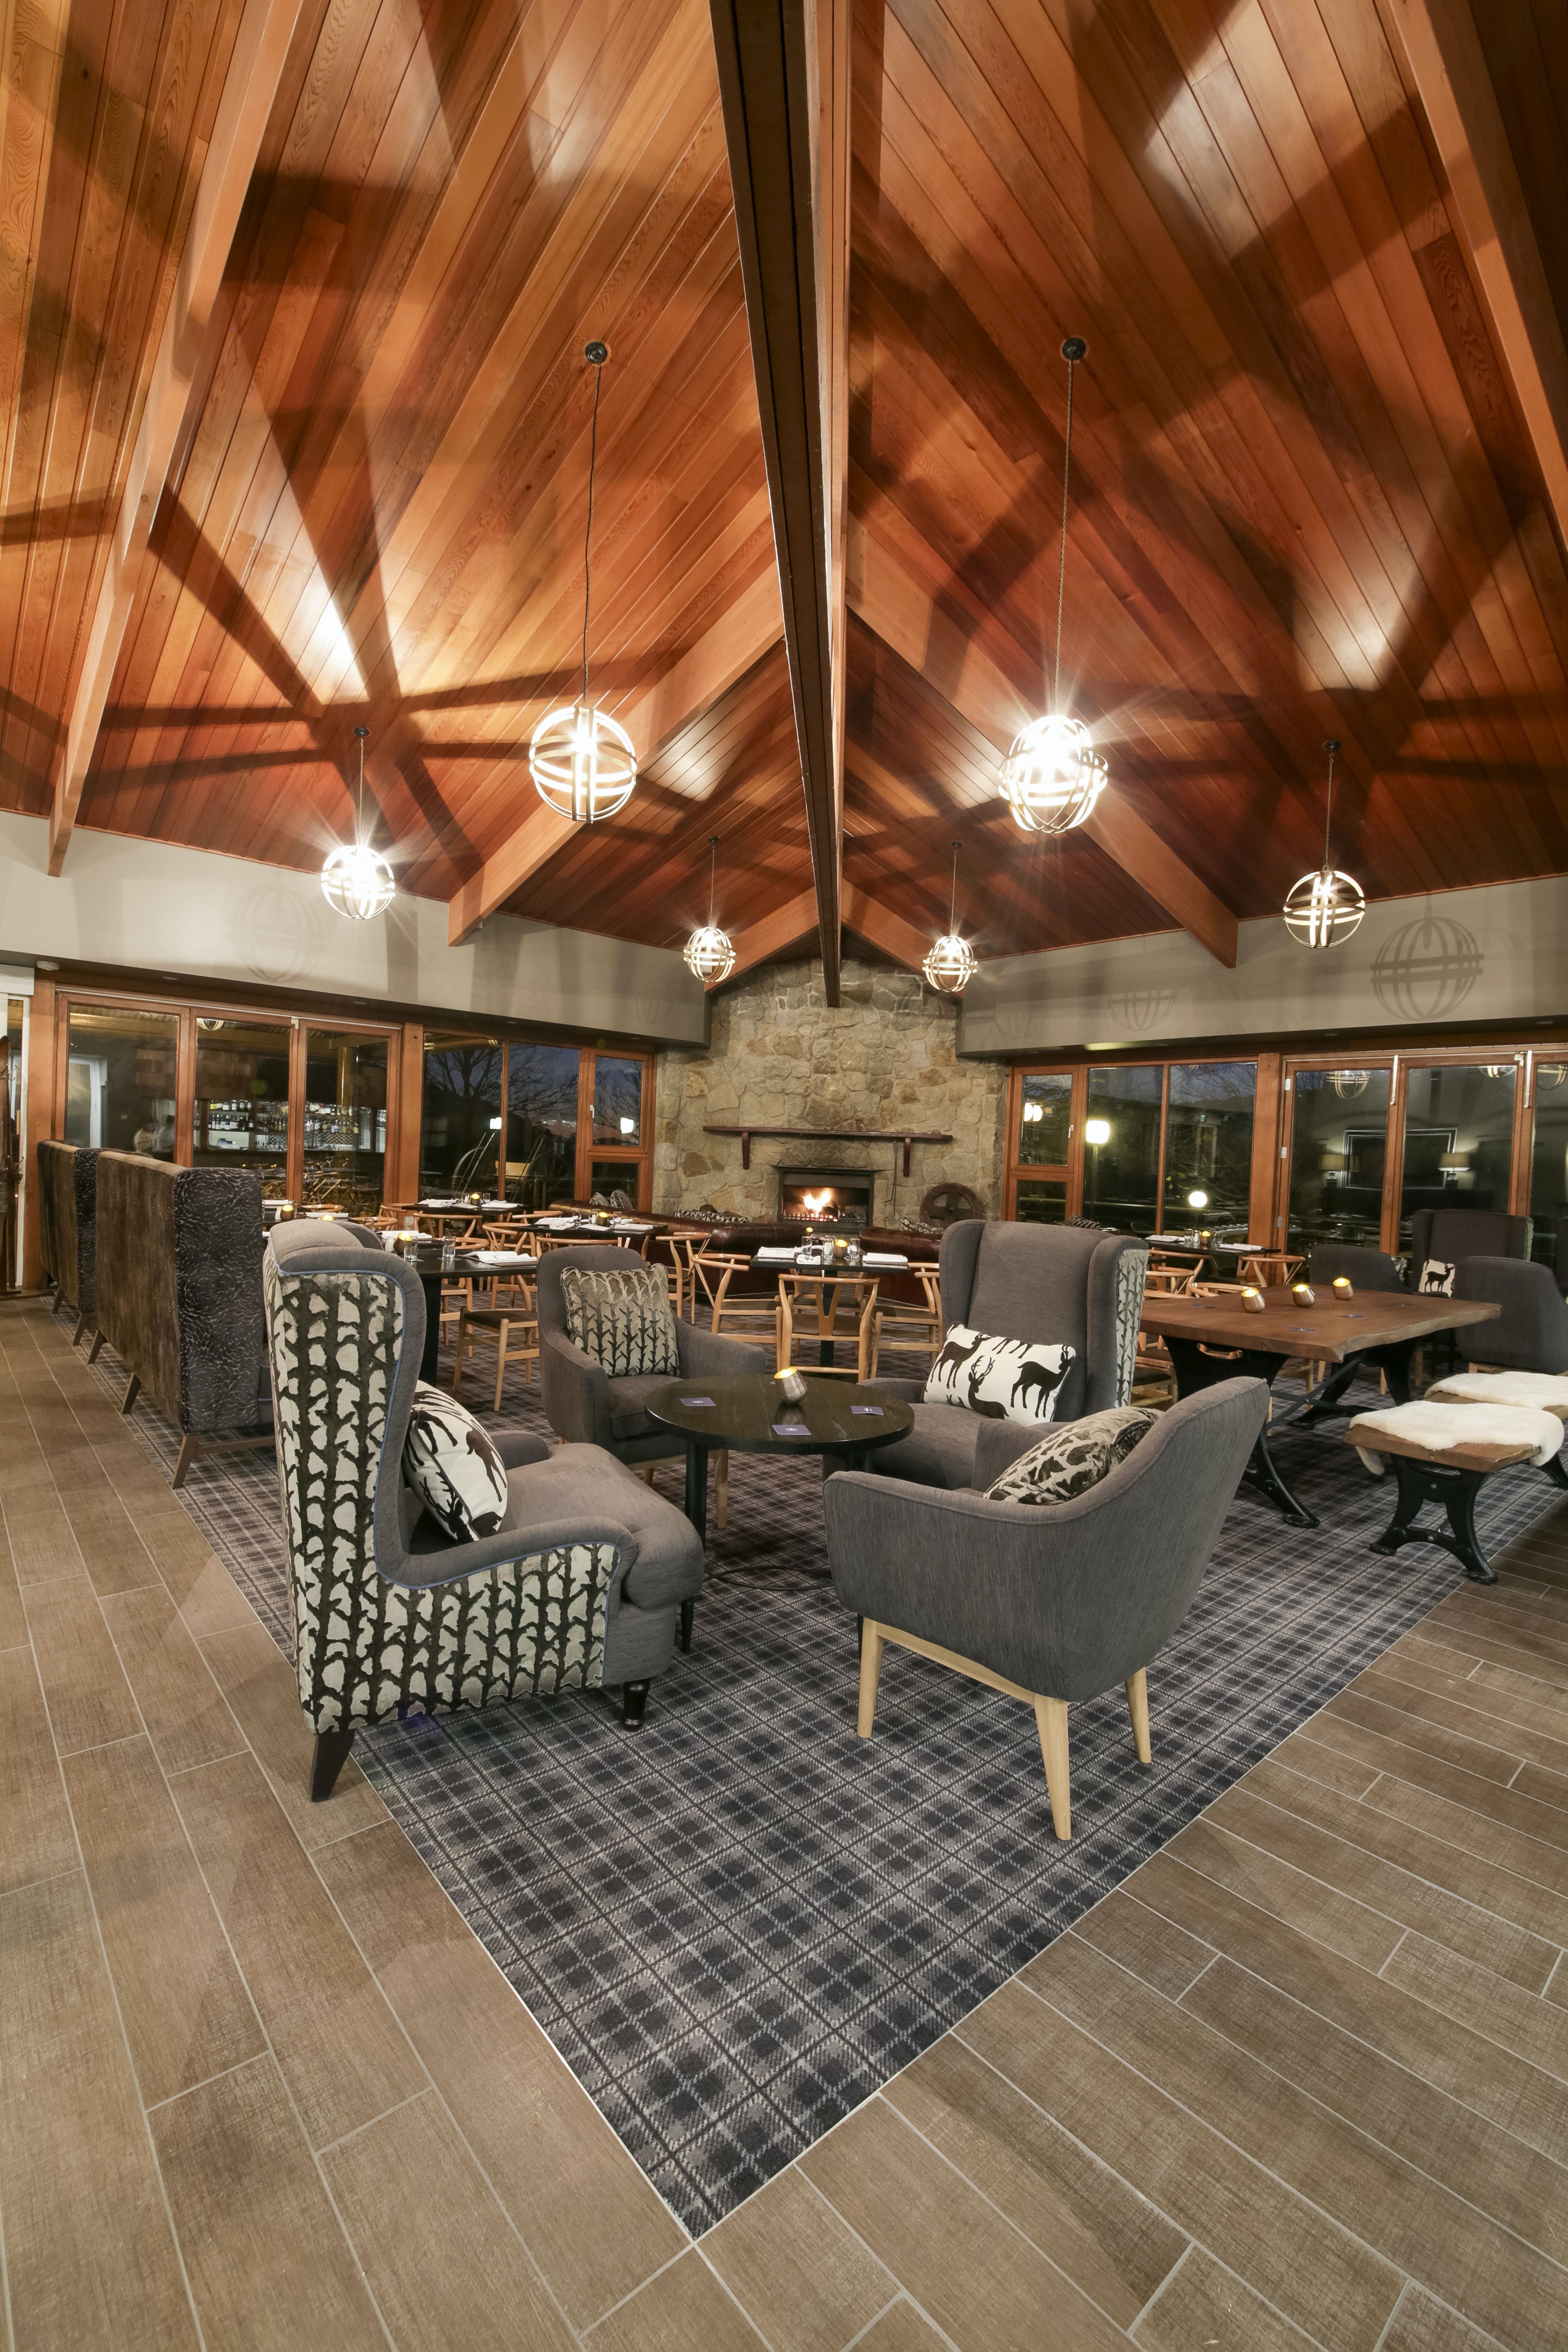 The Sebel Pinnacle Valley Resort - Wagga Wagga Accommodation